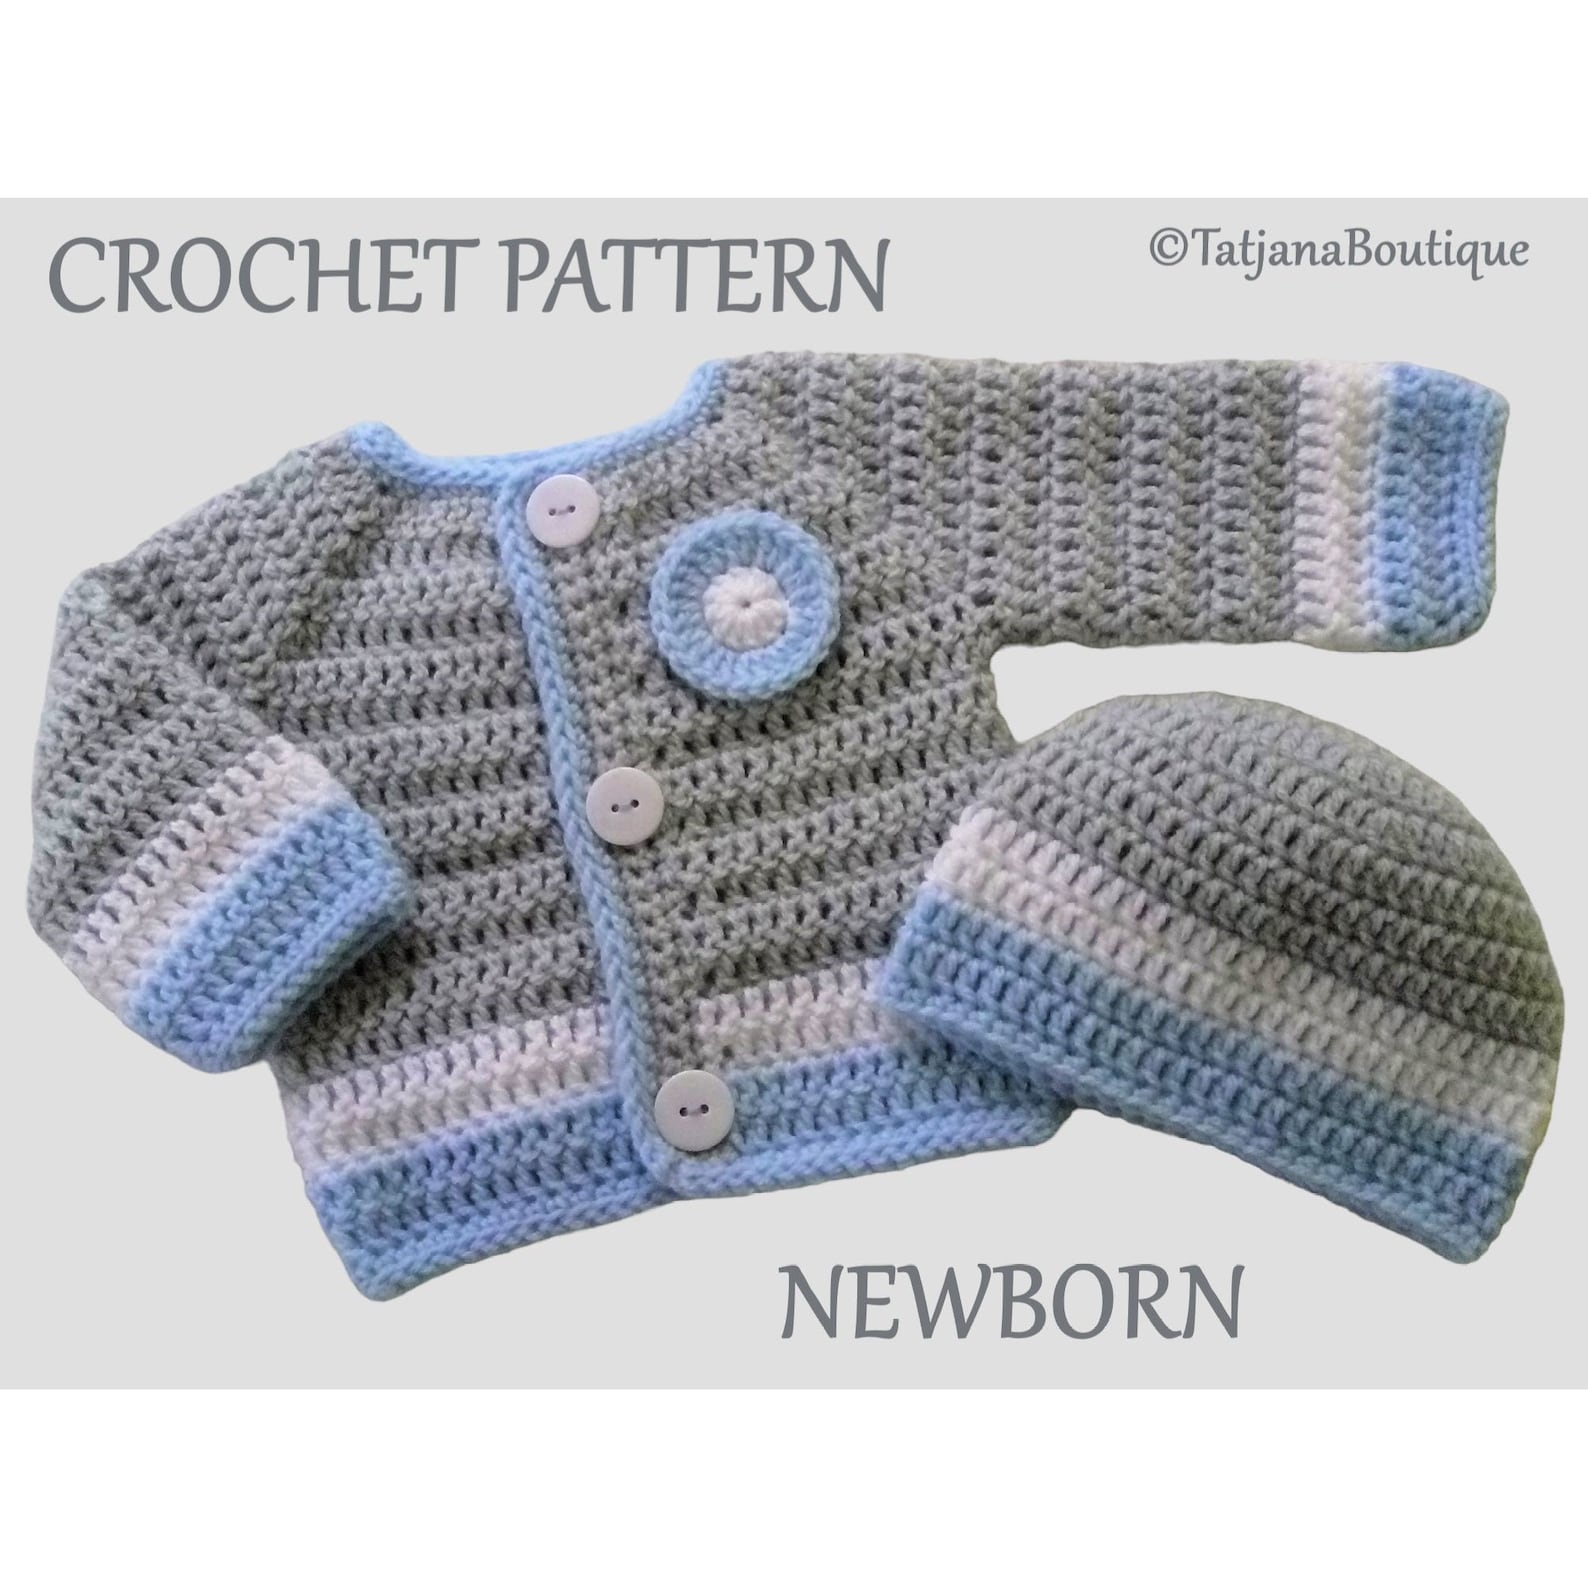 Striped baby blanket free crochet pattern